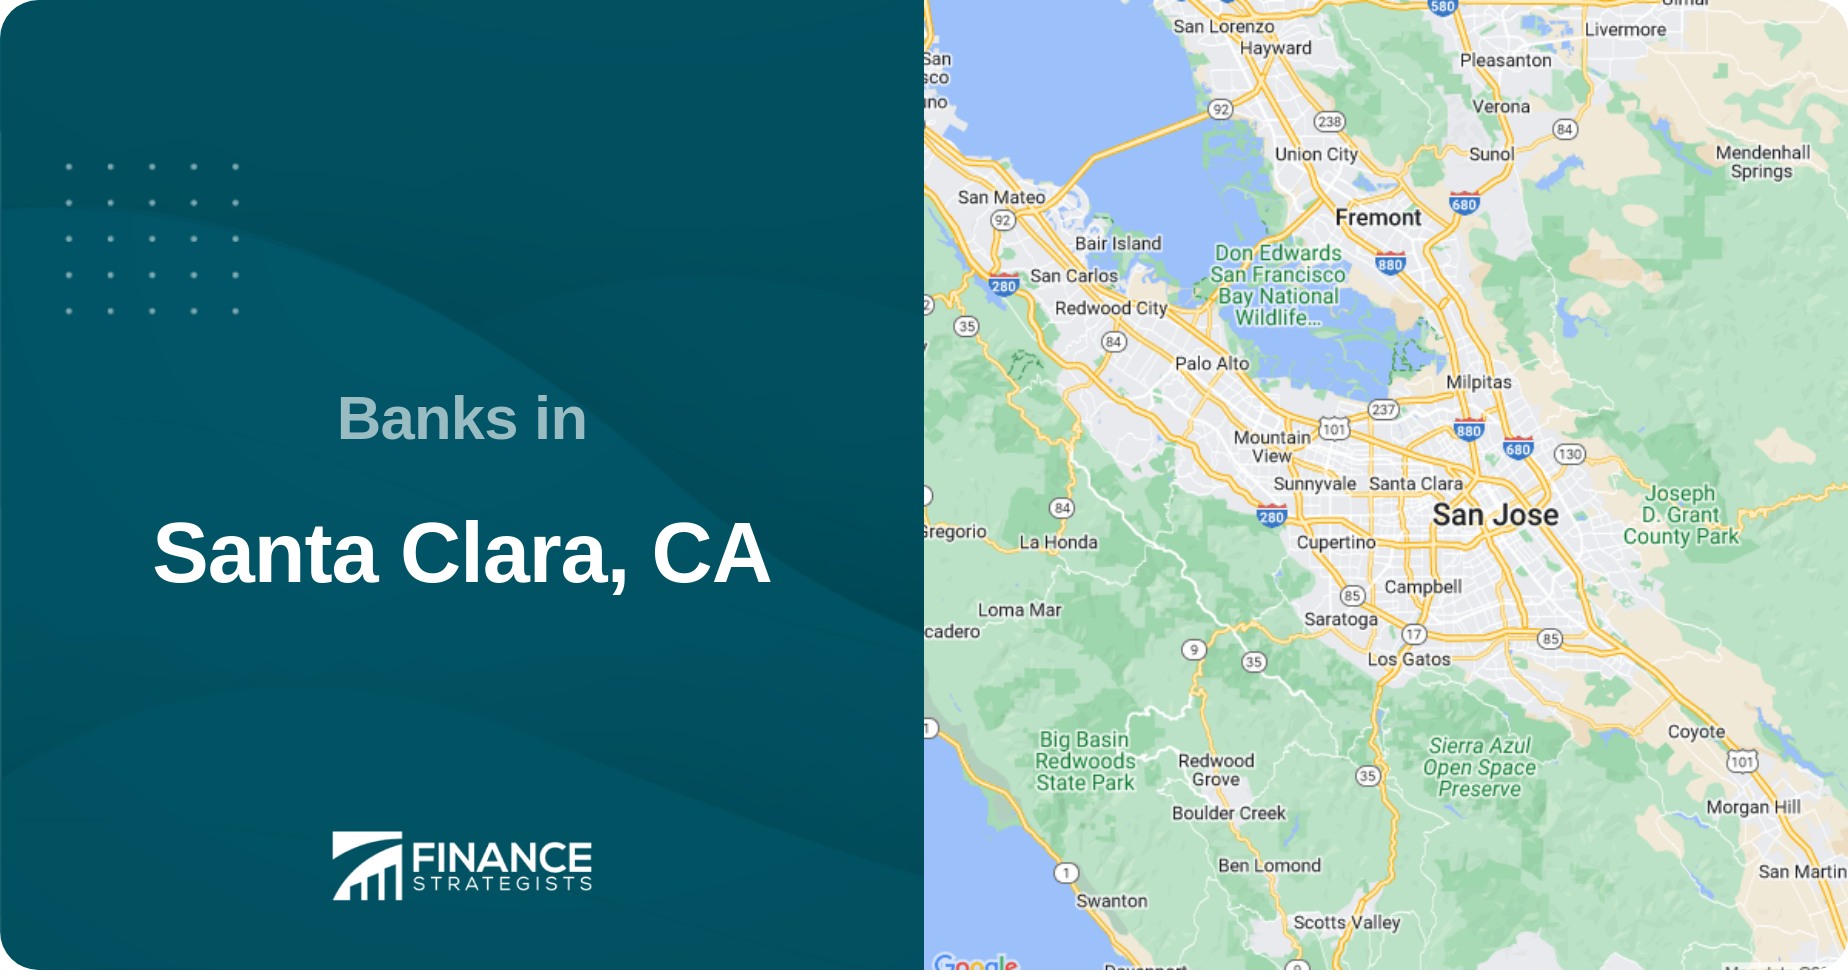 Banks in Santa Clara, CA